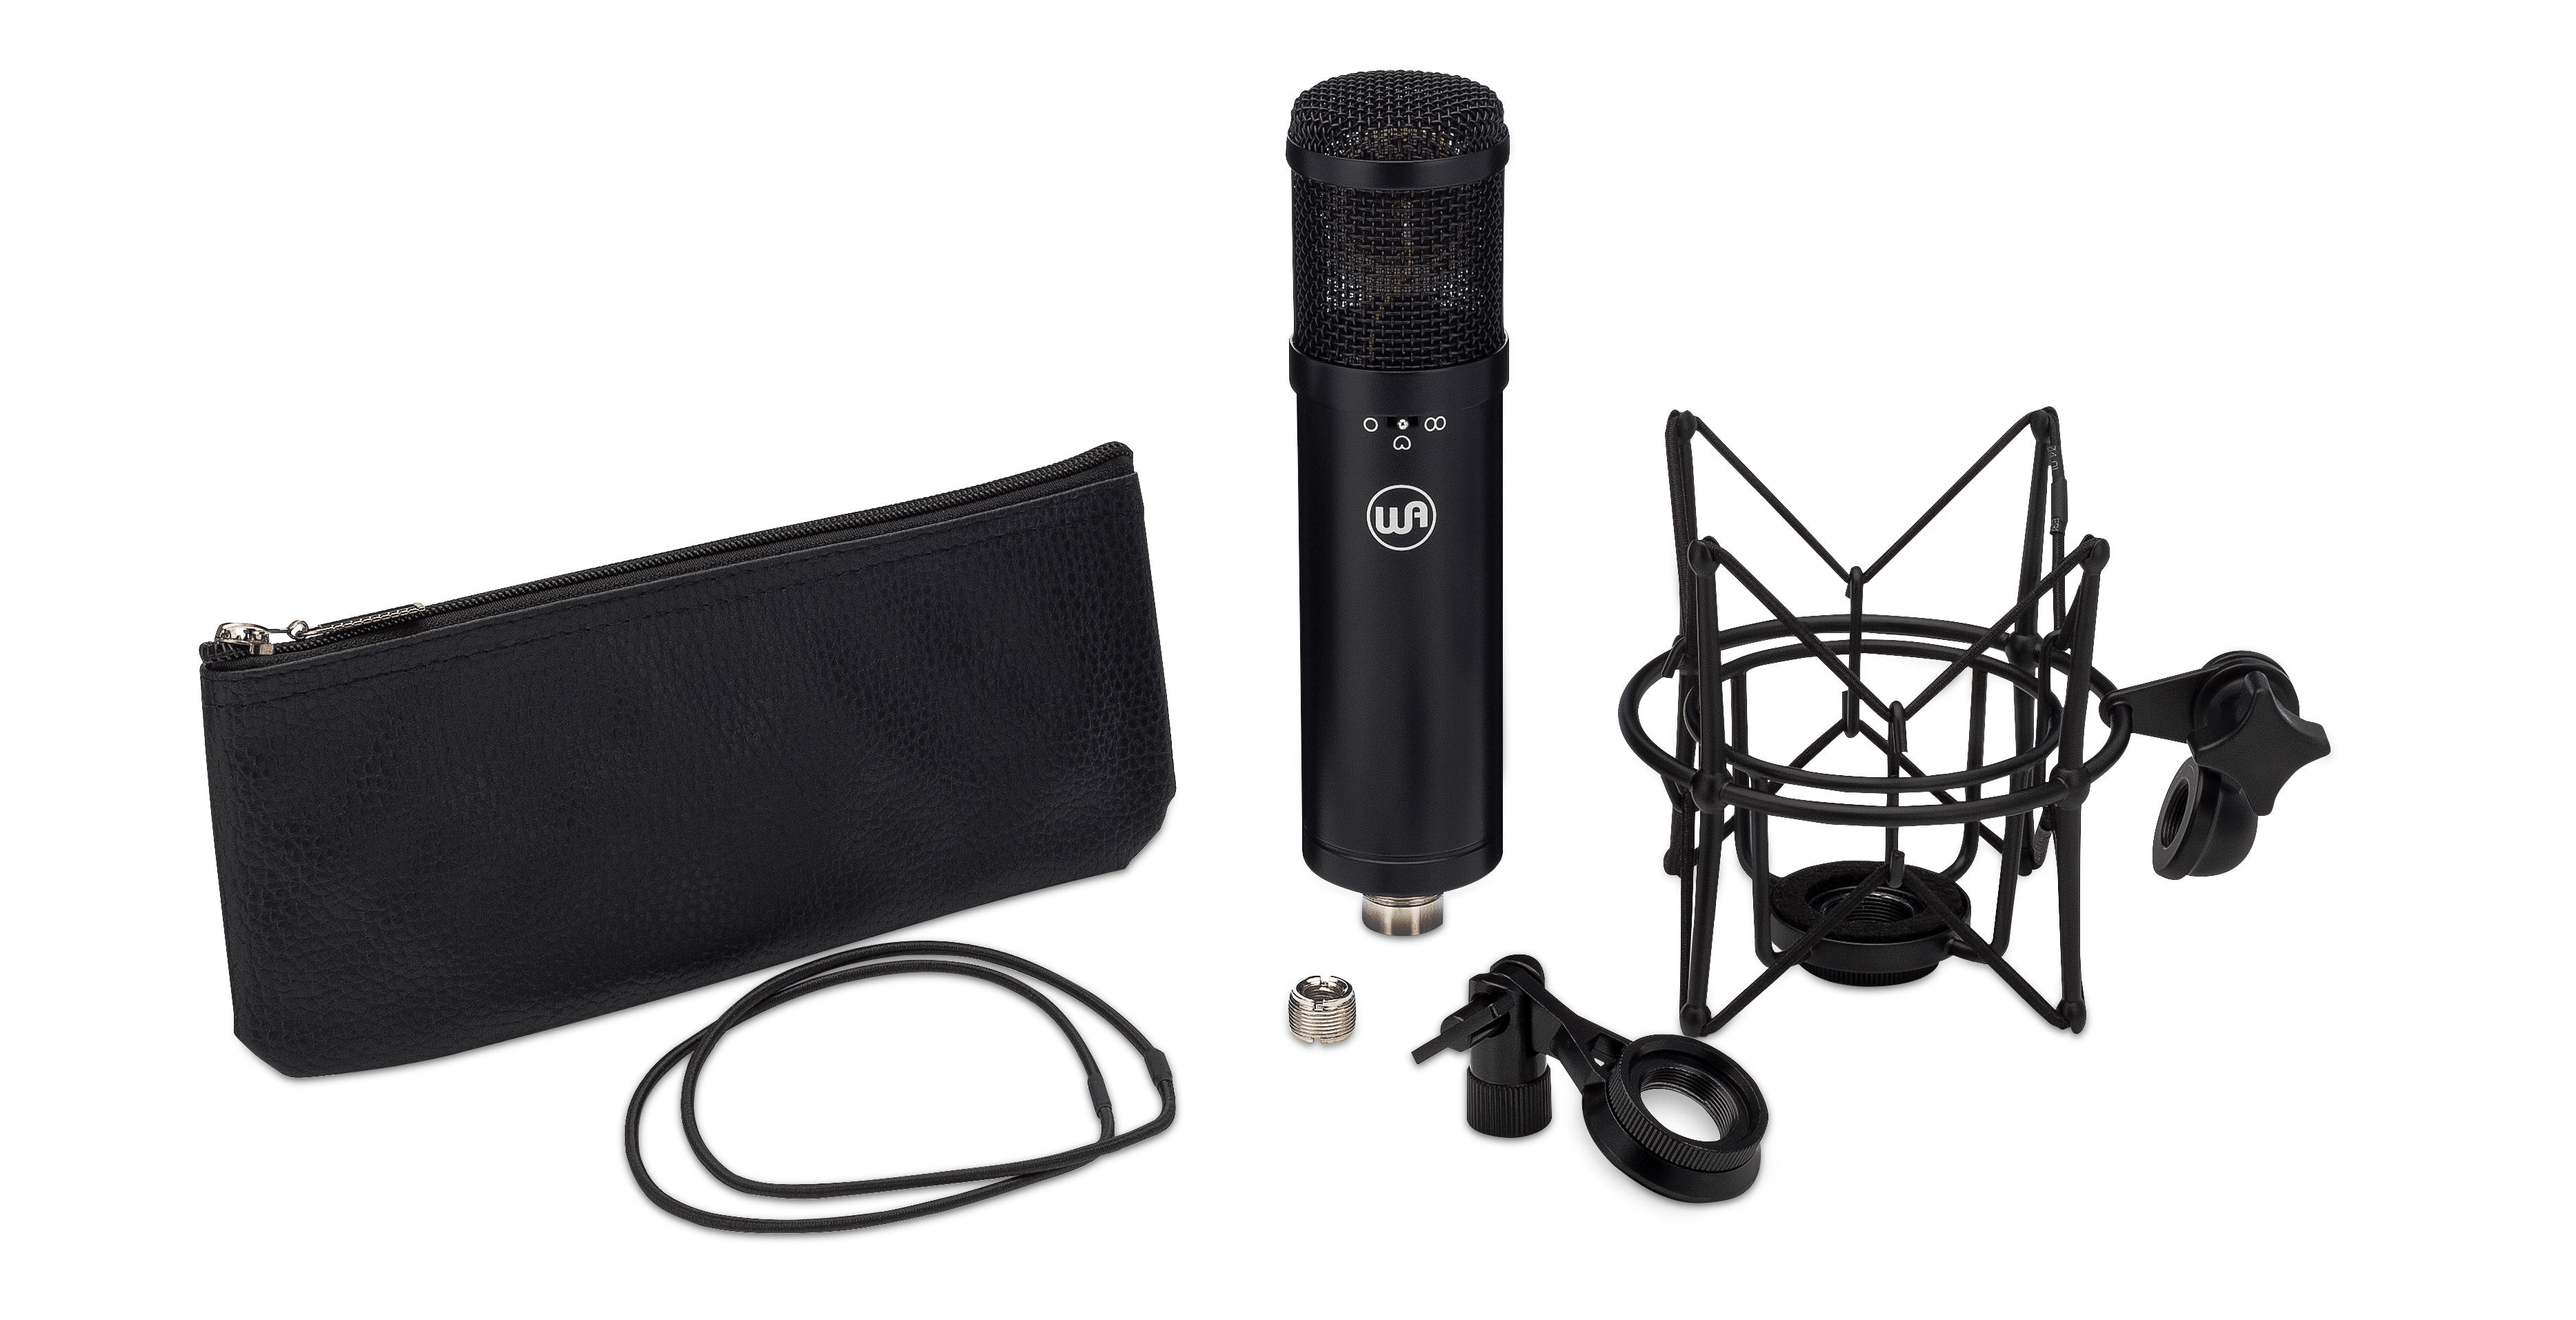 Warm Audio WA-47Jr Condenser Microphone